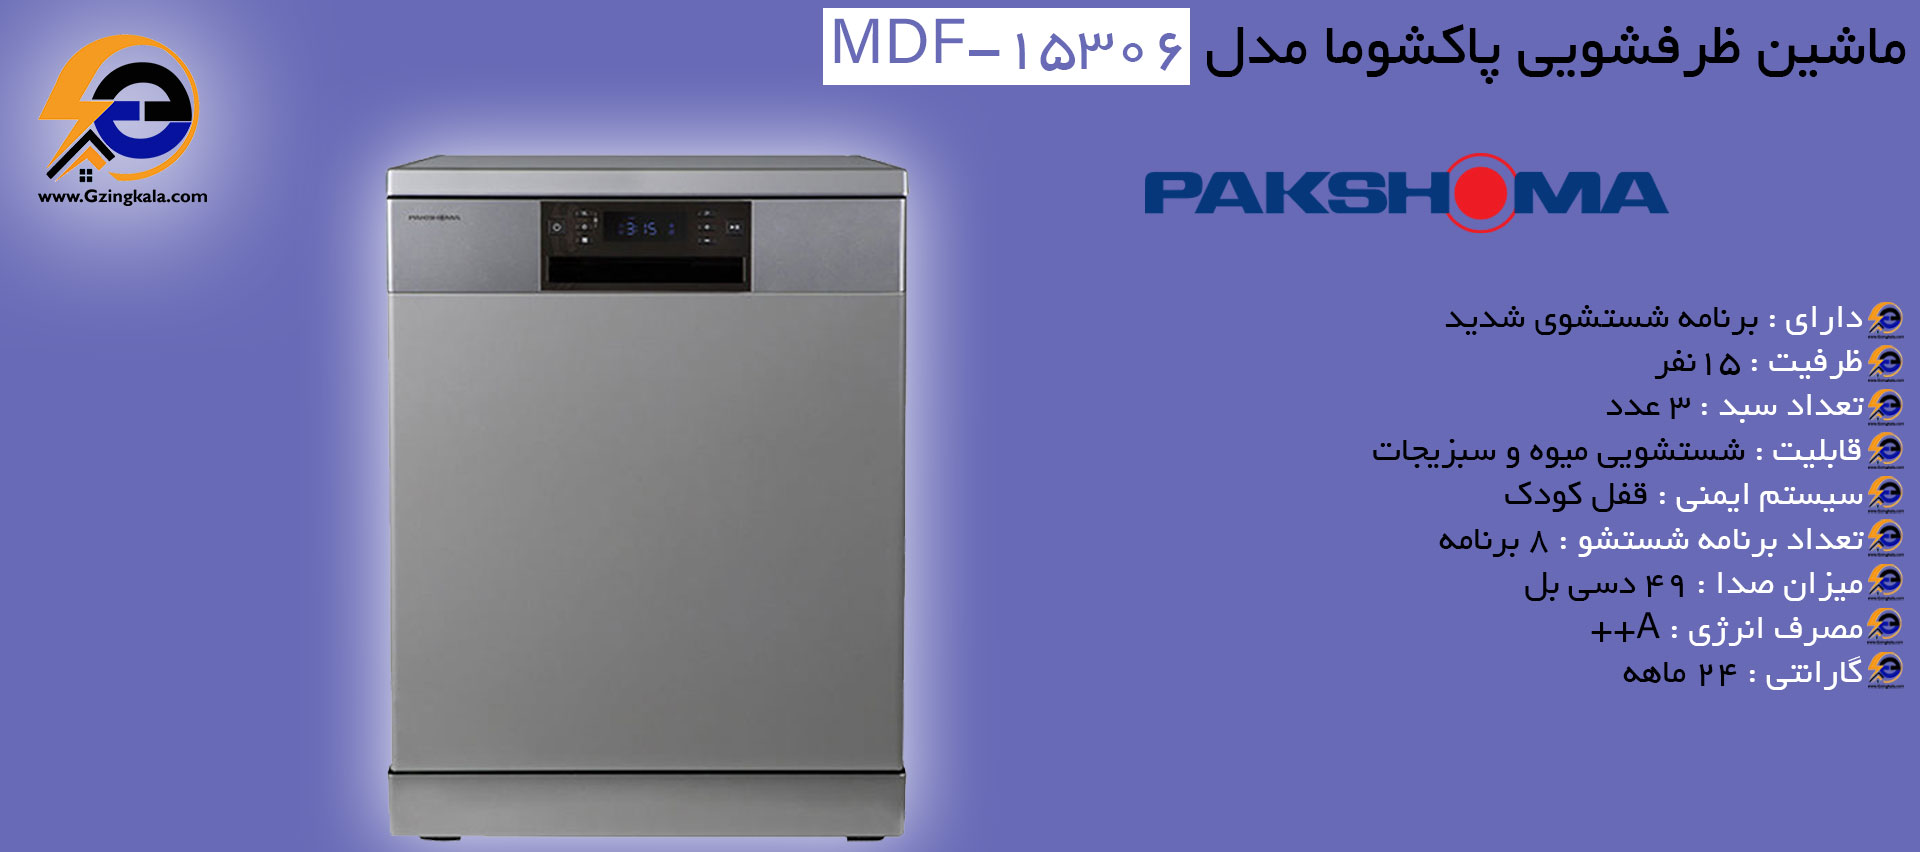 ماشین ظرفشویی پاکشوما مدل MDF-15306